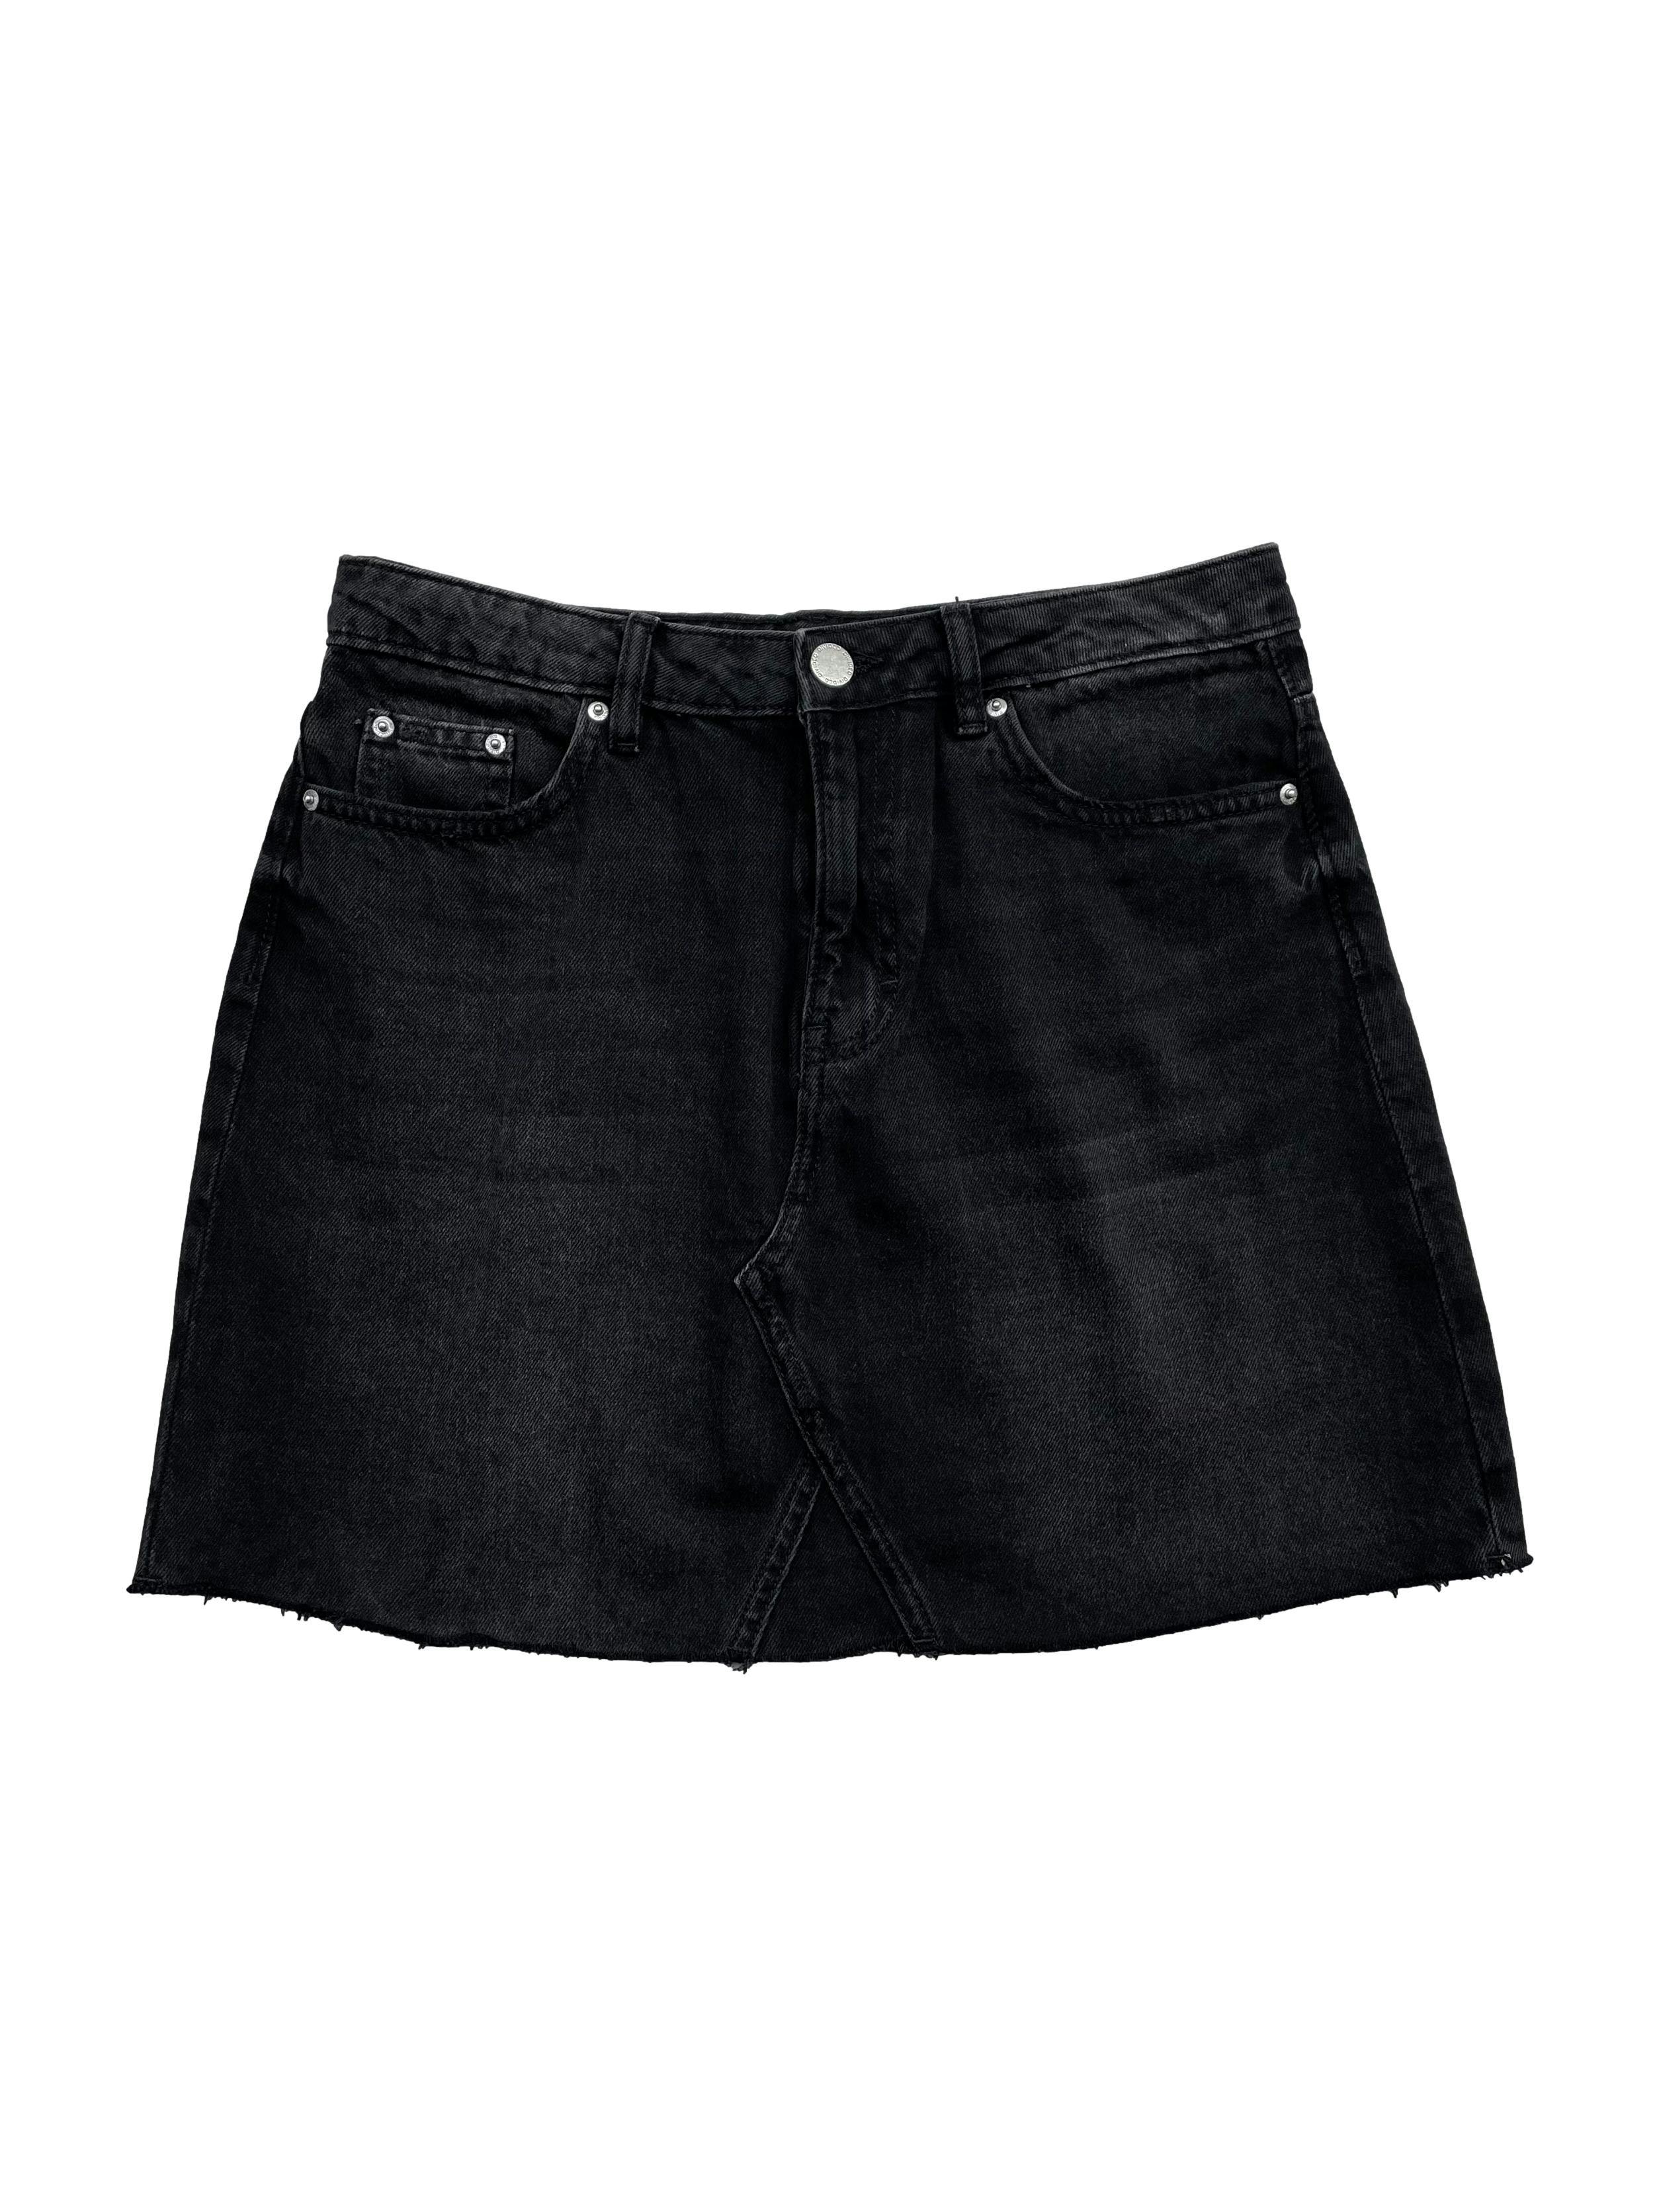 Falda slim H&M, negra efecto lavado, con basta desflecada. Cintura: 74cm, Largo: 41cm.